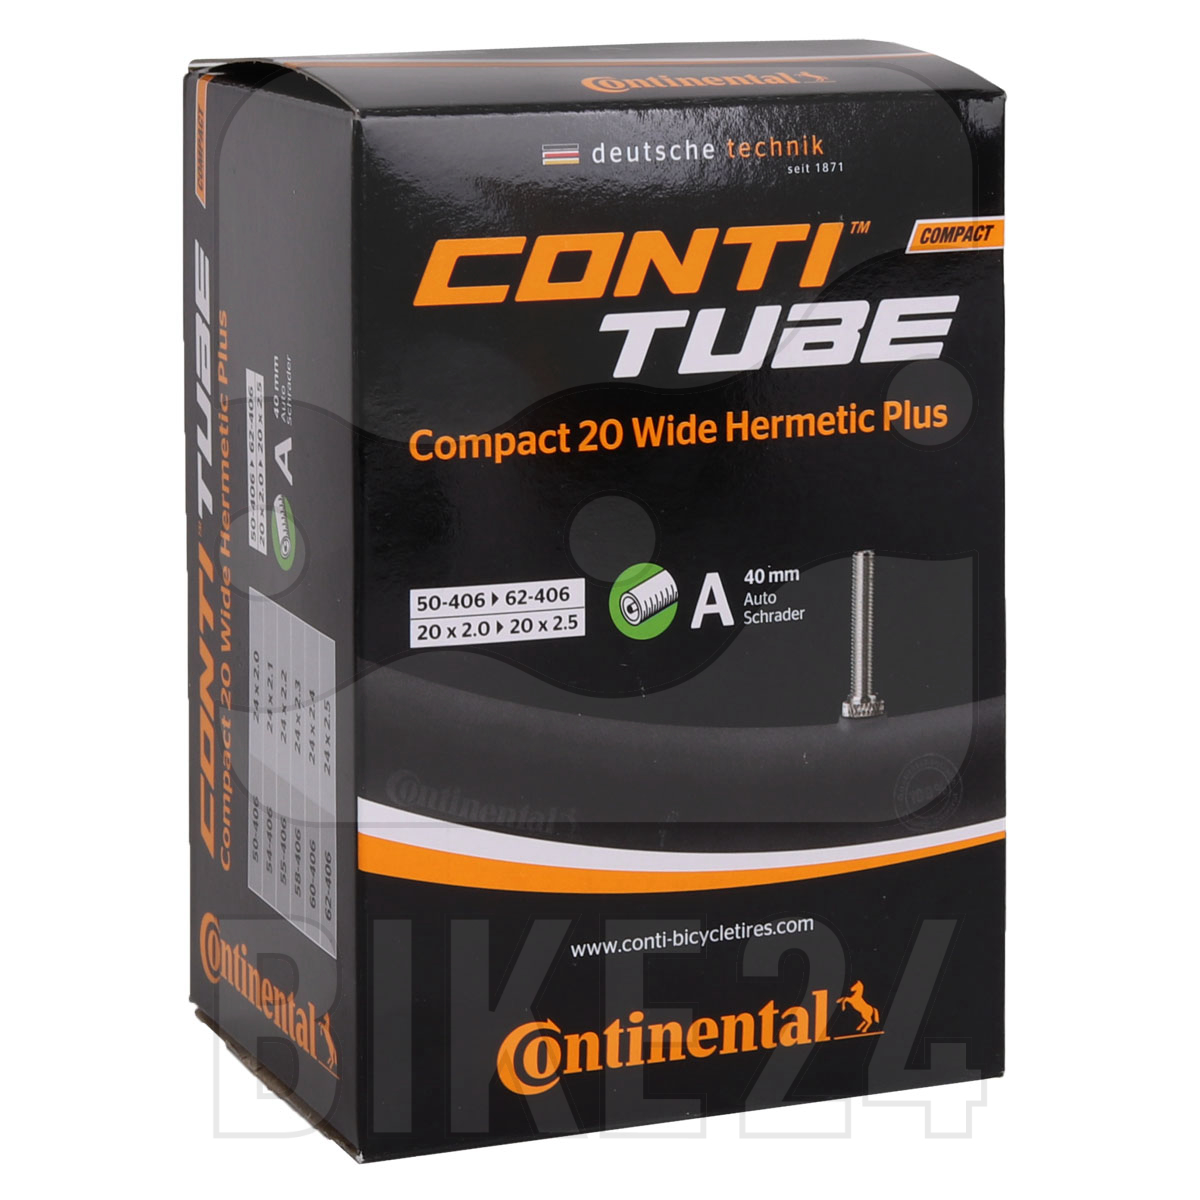 Produktbild von Continental Compact 24 Wide Hermetic Plus Schlauch